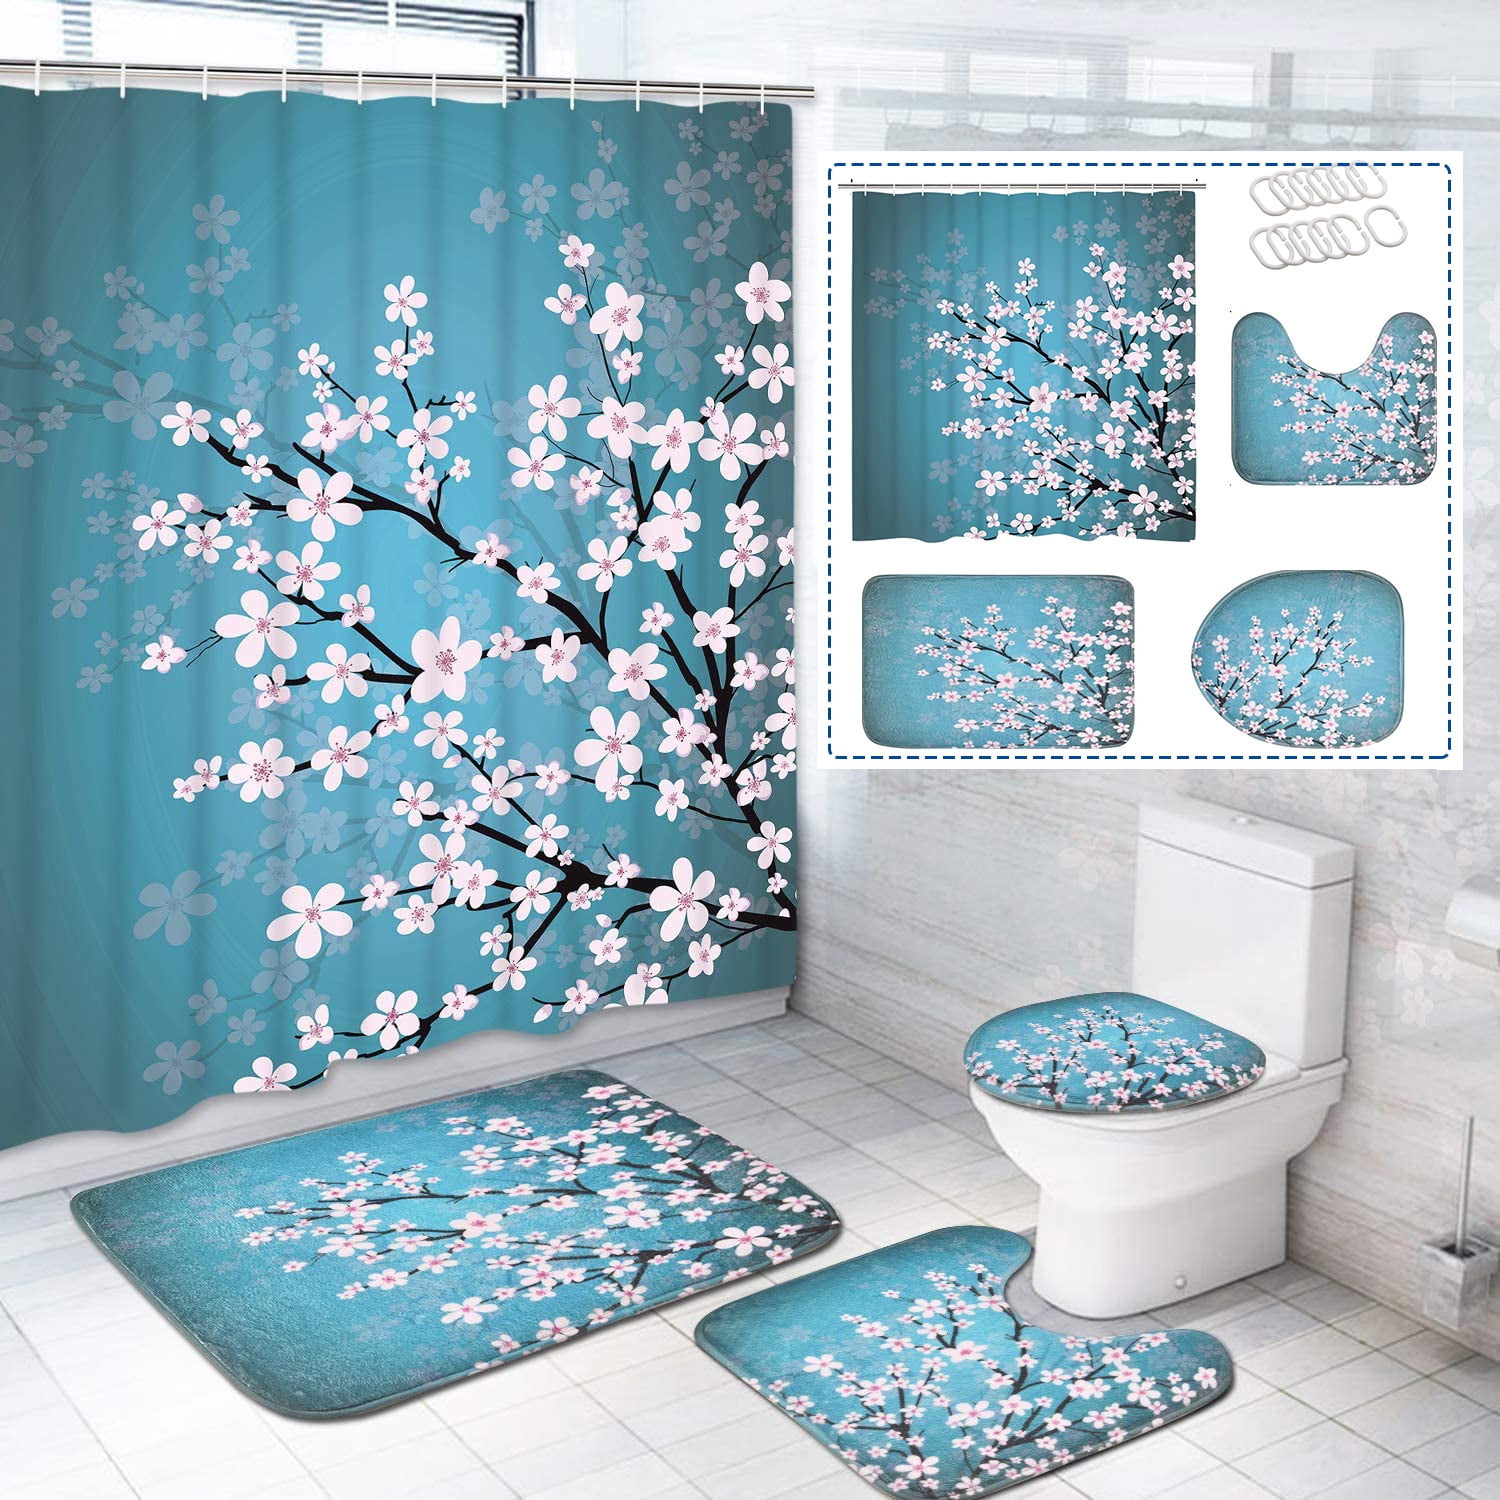 Lake Sakura Retro Japanese Shrine Bathroom Decor Shower Curtain Sets w/ Hooks 